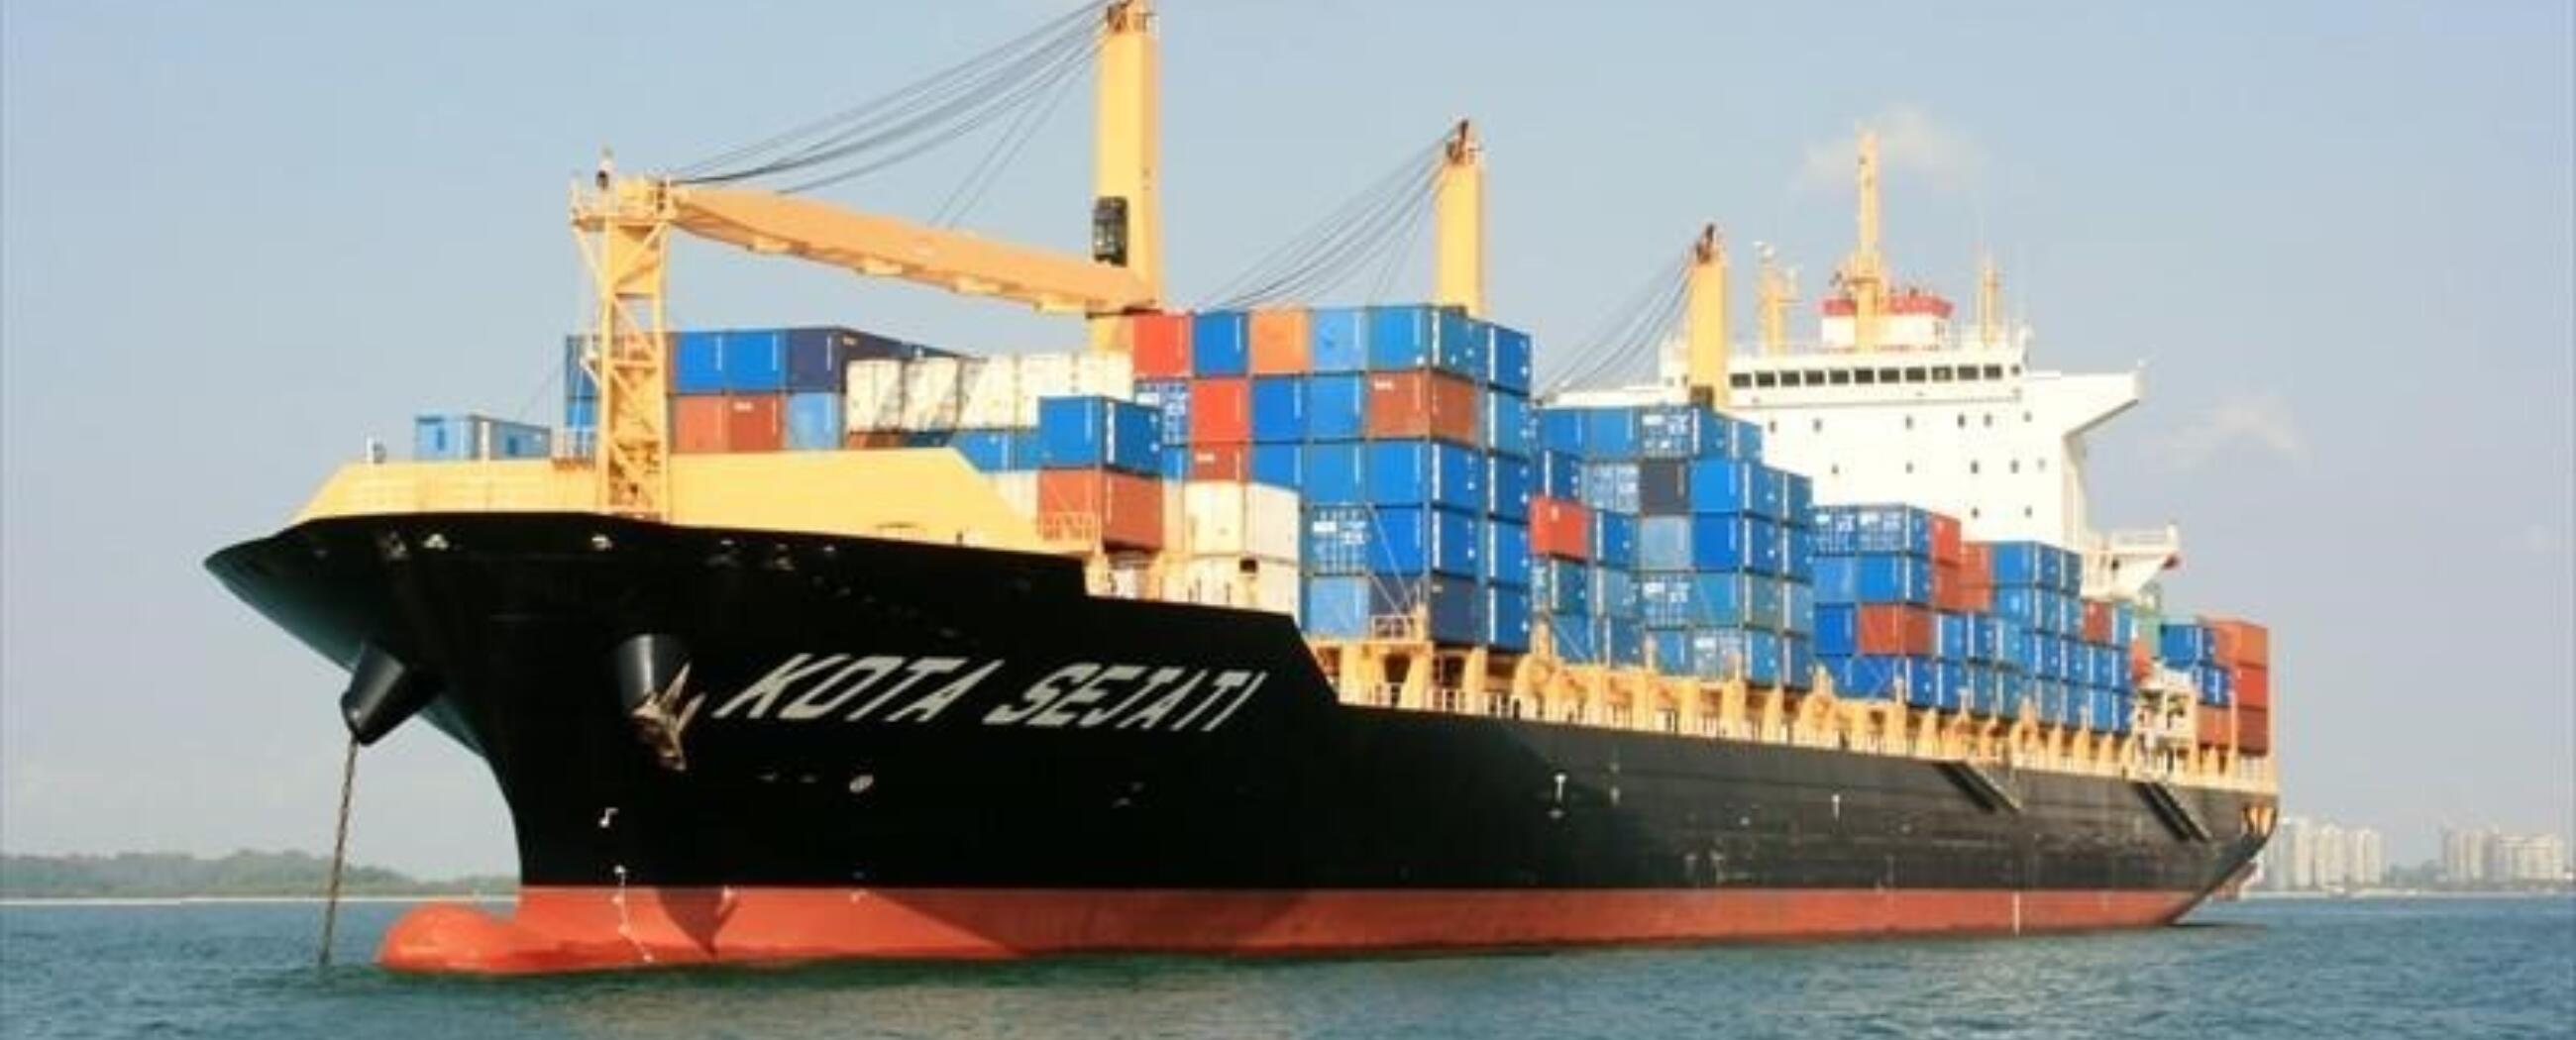 Container-vessel-Kota-Sejati.jpg